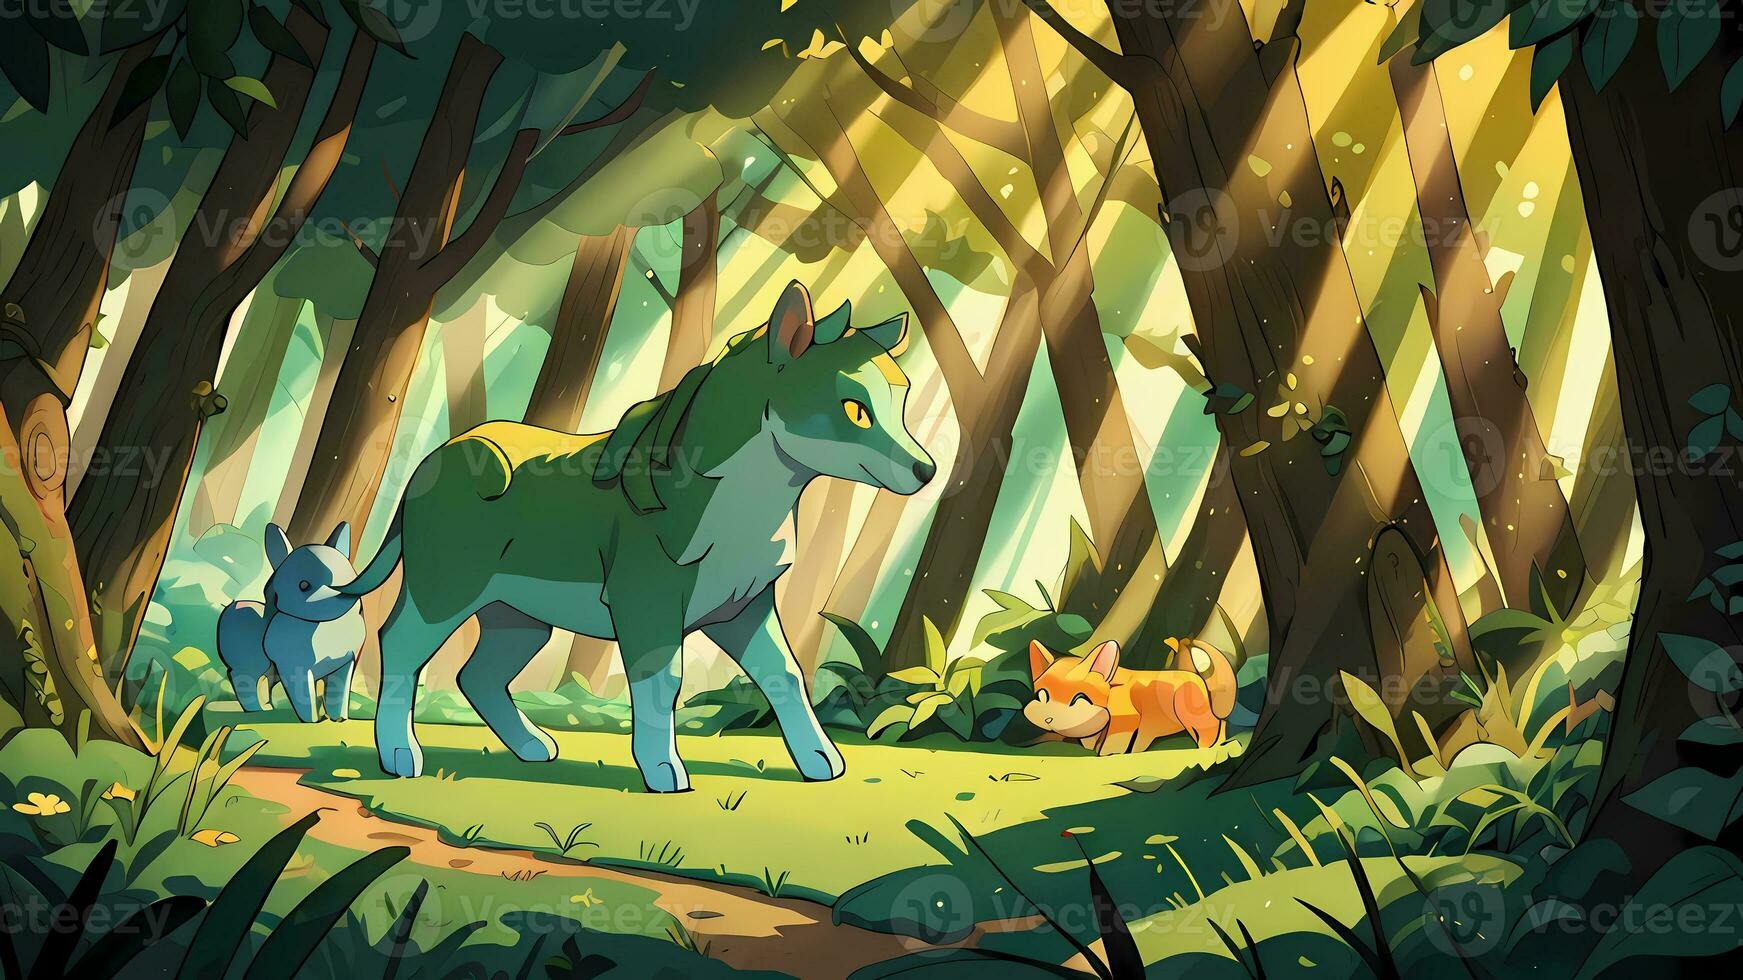 místico criaturas en bosque niños libro ilustración cómic visual foto